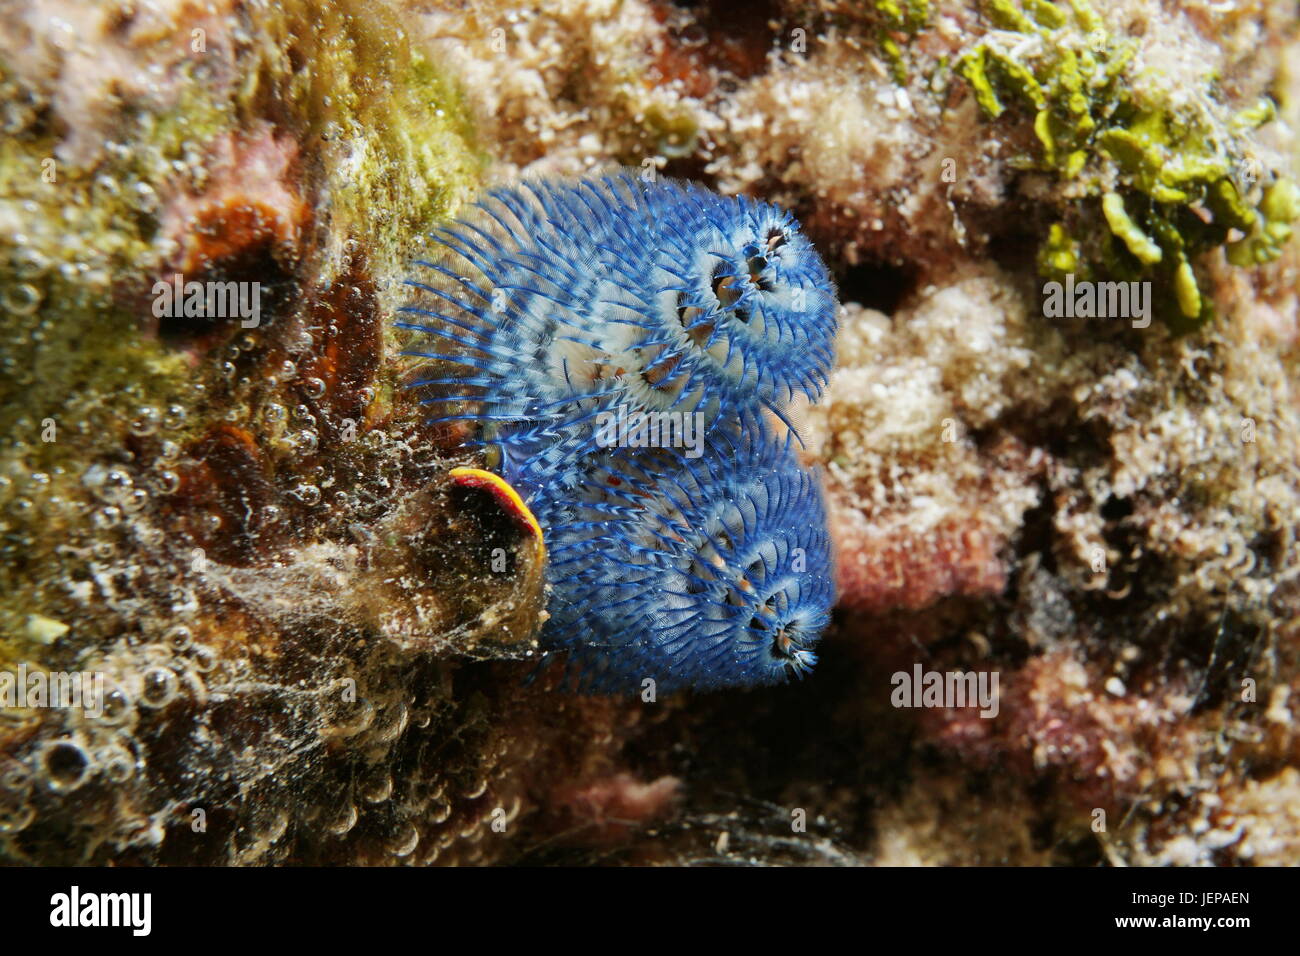 Une vie Marine Blue Christmas Tree worm, Spirobranchus giganteus, sous l'eau dans le lagon de Bora Bora, l'océan Pacifique, Polynésie Française Banque D'Images